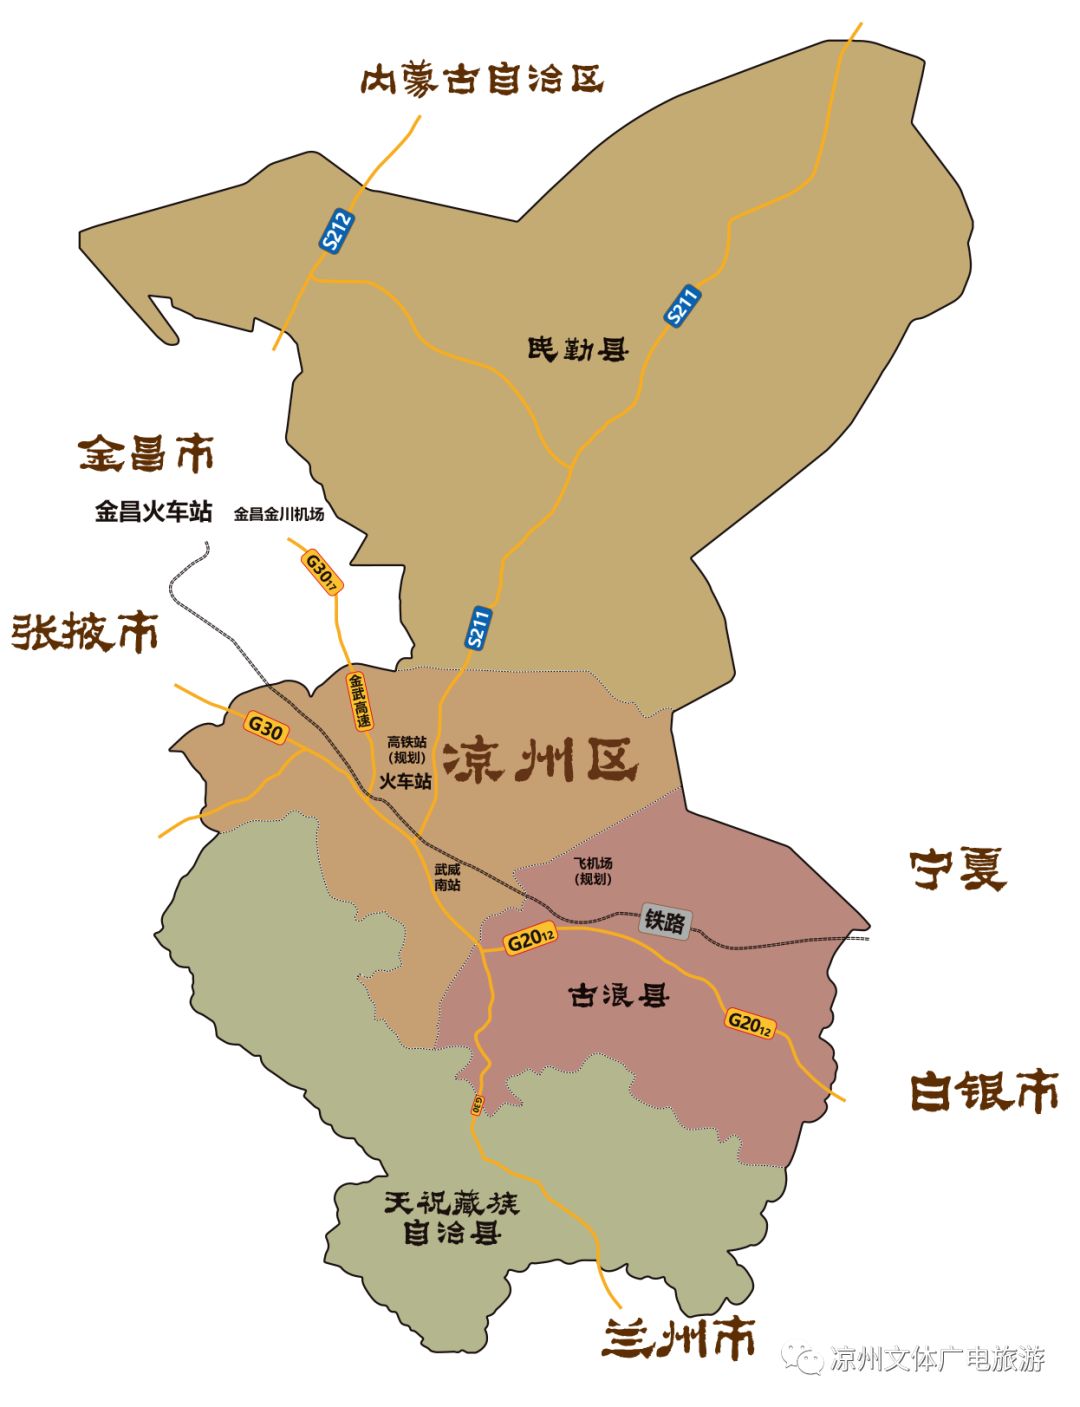 凉州,位于甘肃的西部,河西走廊东端,居地理位置中心,东靠白银市